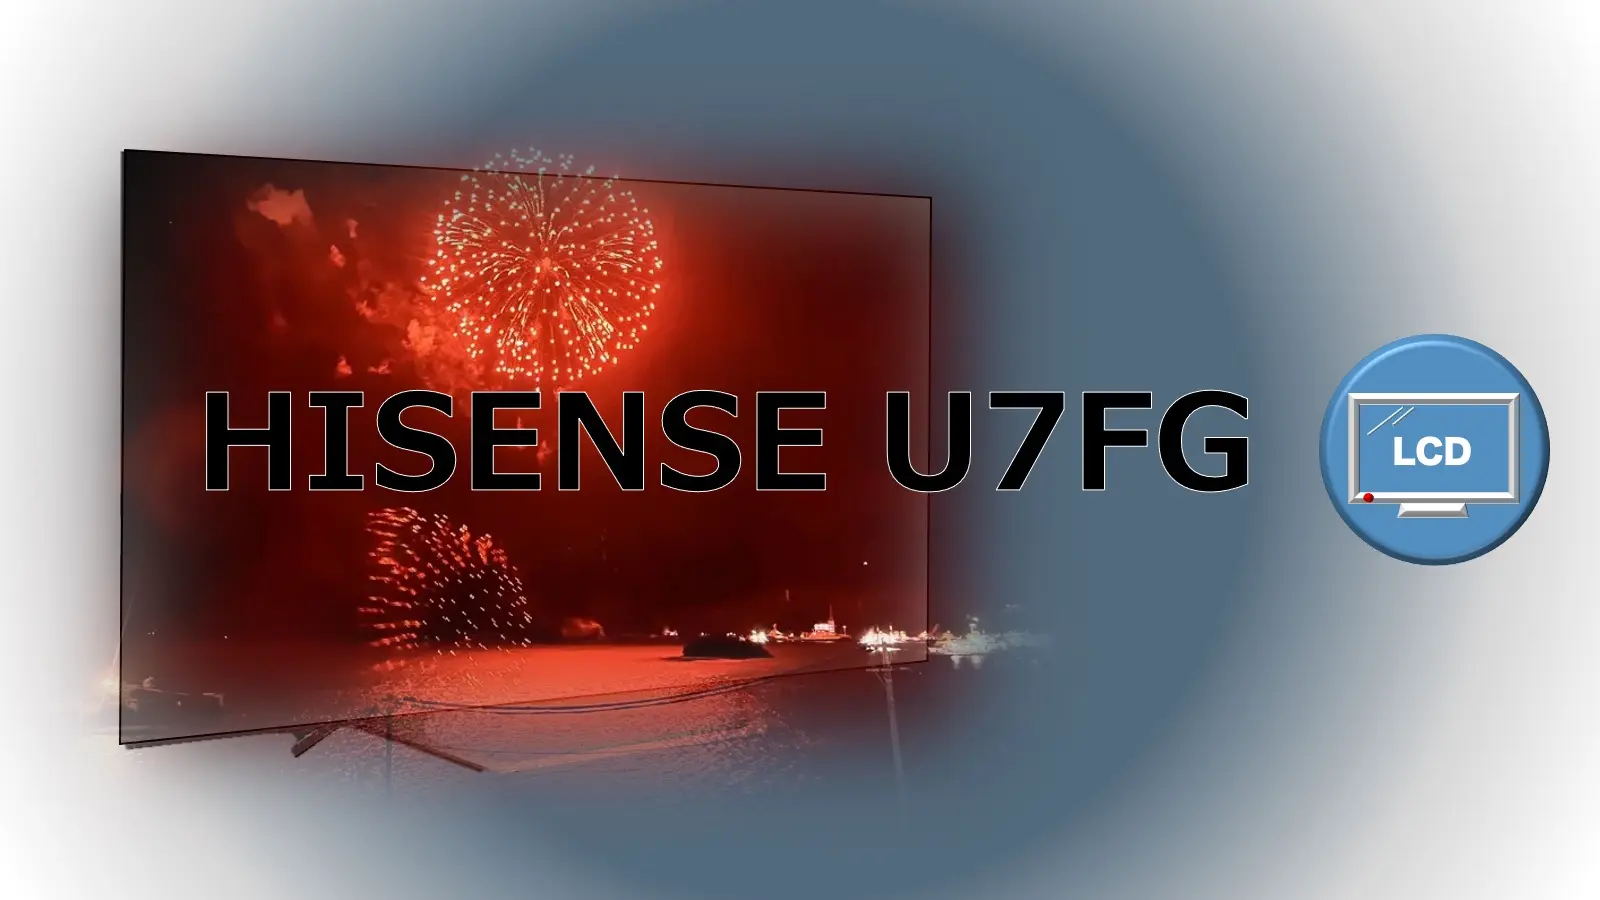 ハイセンス 4K液晶テレビ U7FG vs. U7F 比較記事用のオリジナルアイキャッチ画像